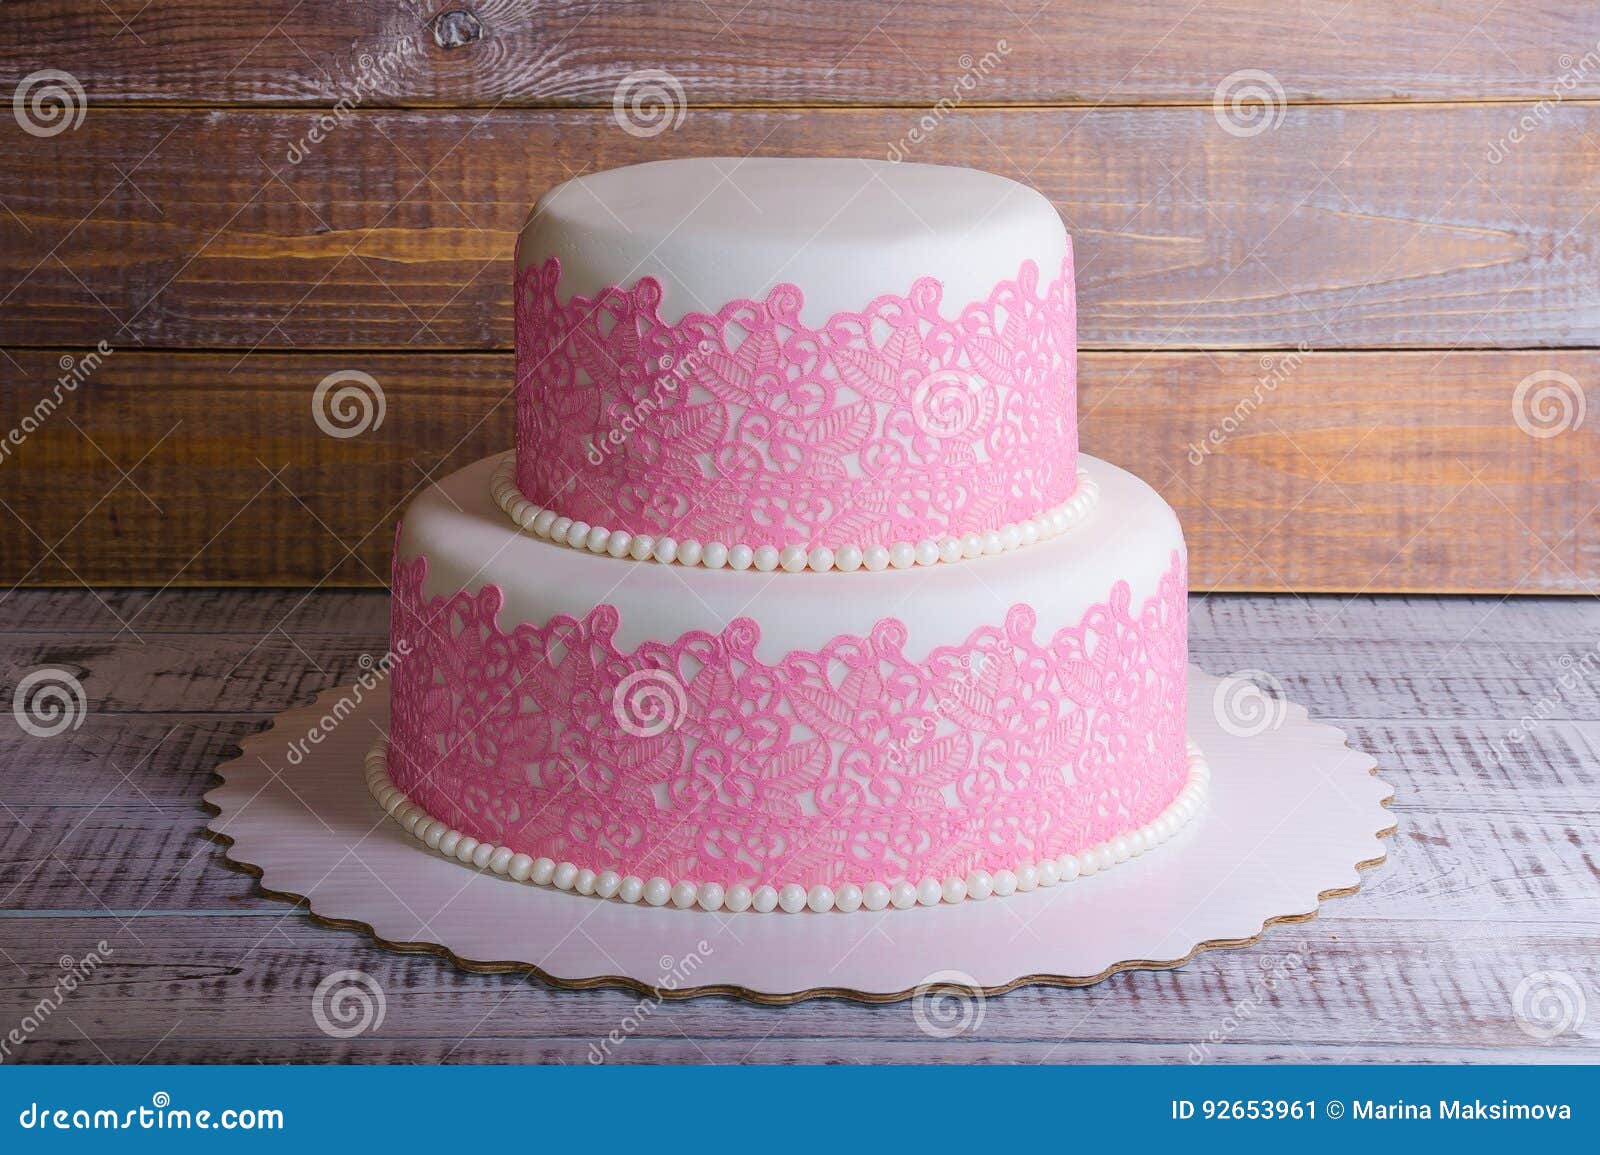 Queen of Cakes - Golden Anniversary 2 tier cake | Facebook